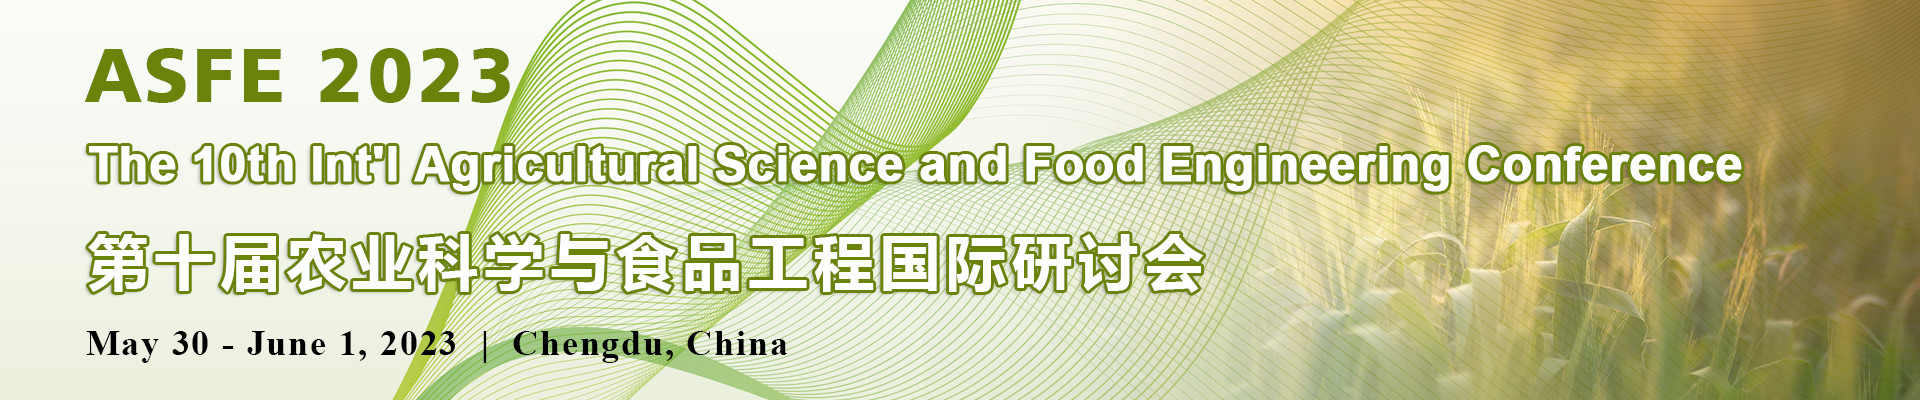 第十届农业科学与食品工程国际研讨会(ASFE 2023)